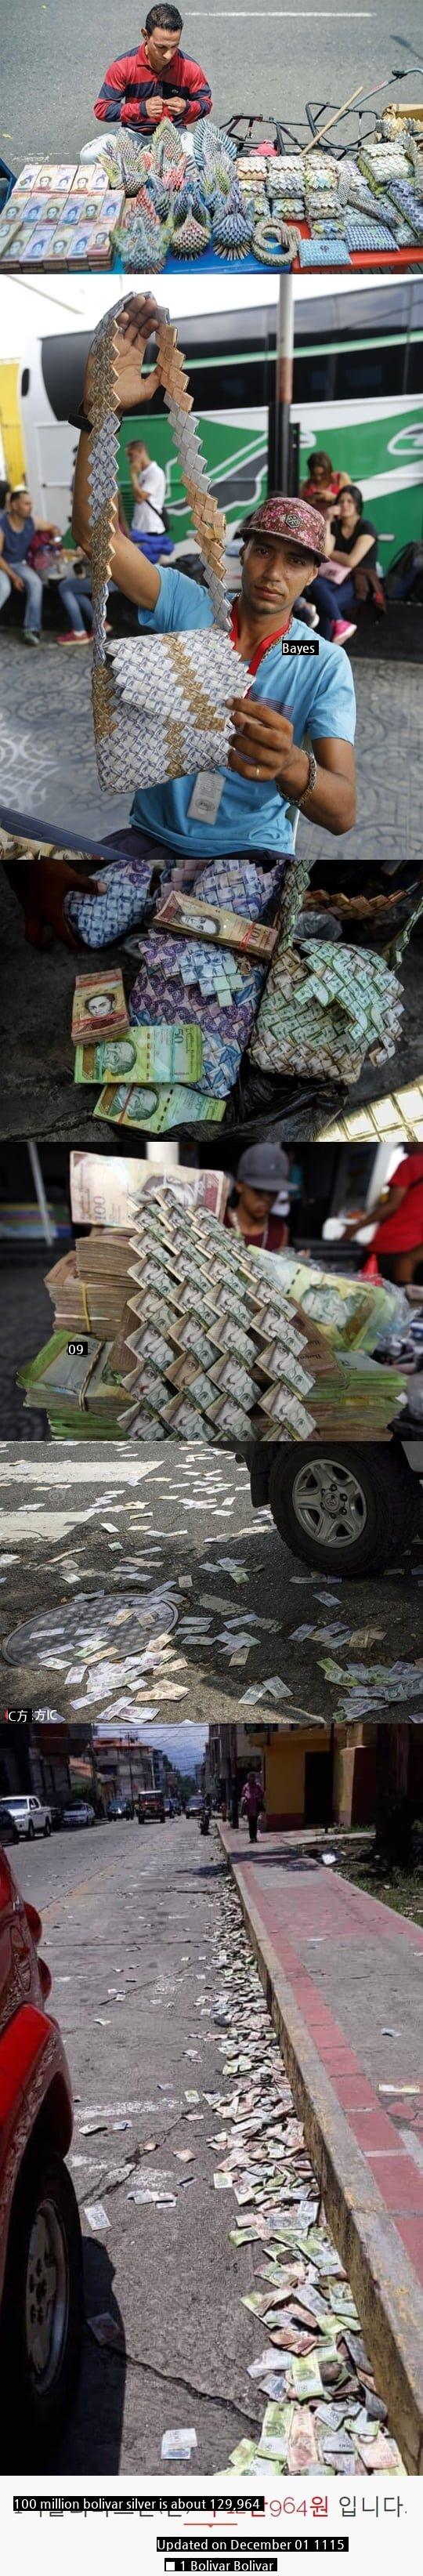 Update on the value of Venezuelan currency.jpg